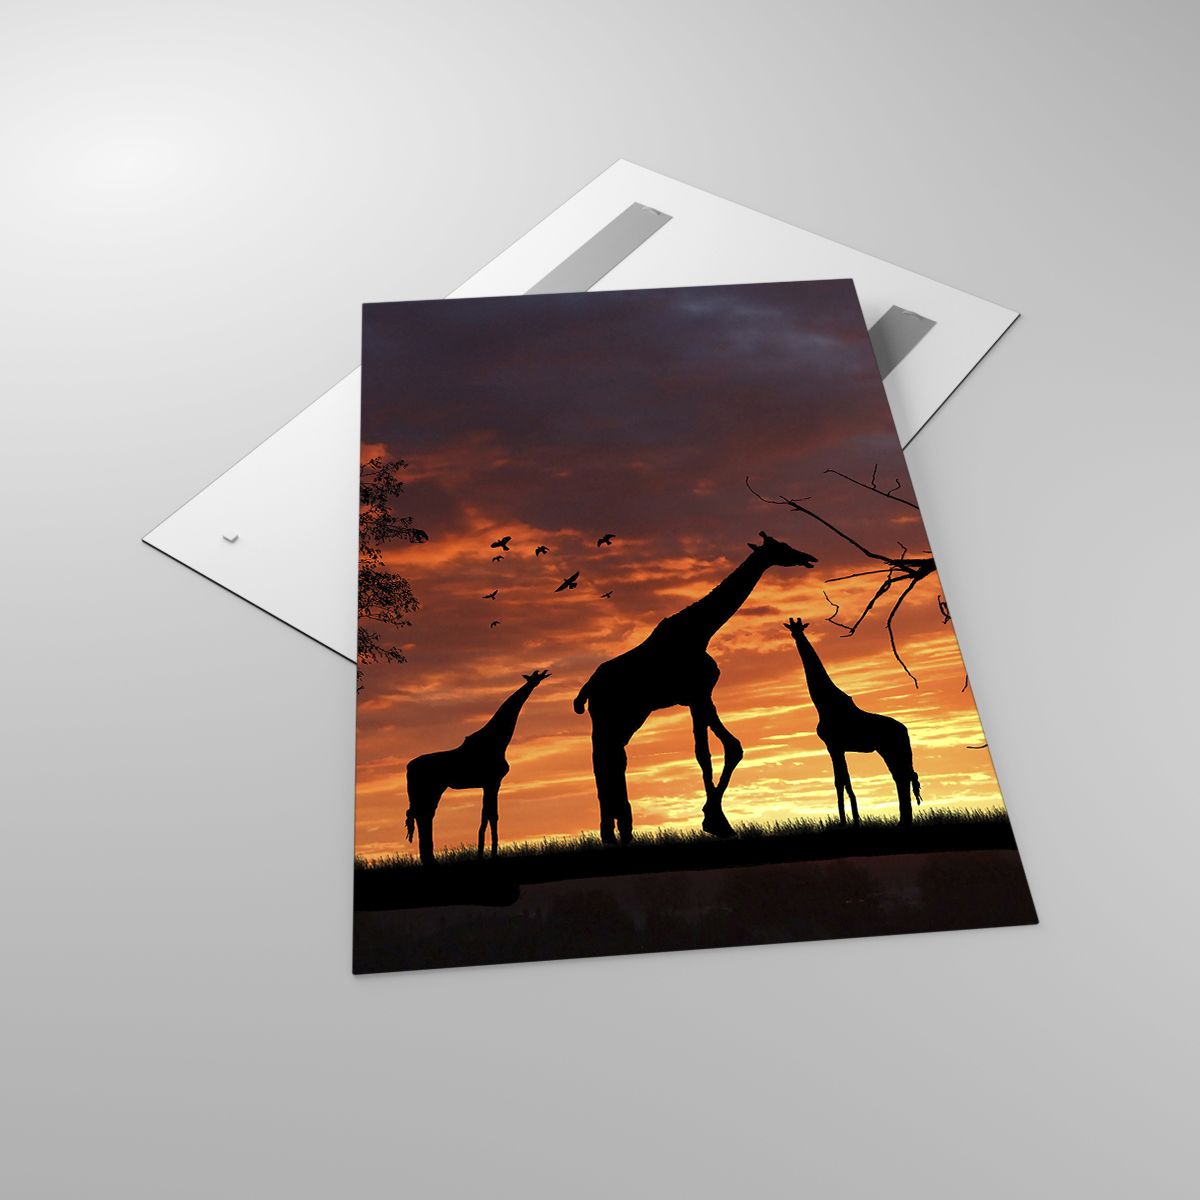 Glasbild Tiere, Glasbild Giraffe, Glasbild Afrika, Glasbild Natur, Glasbild Der Sonnenuntergang